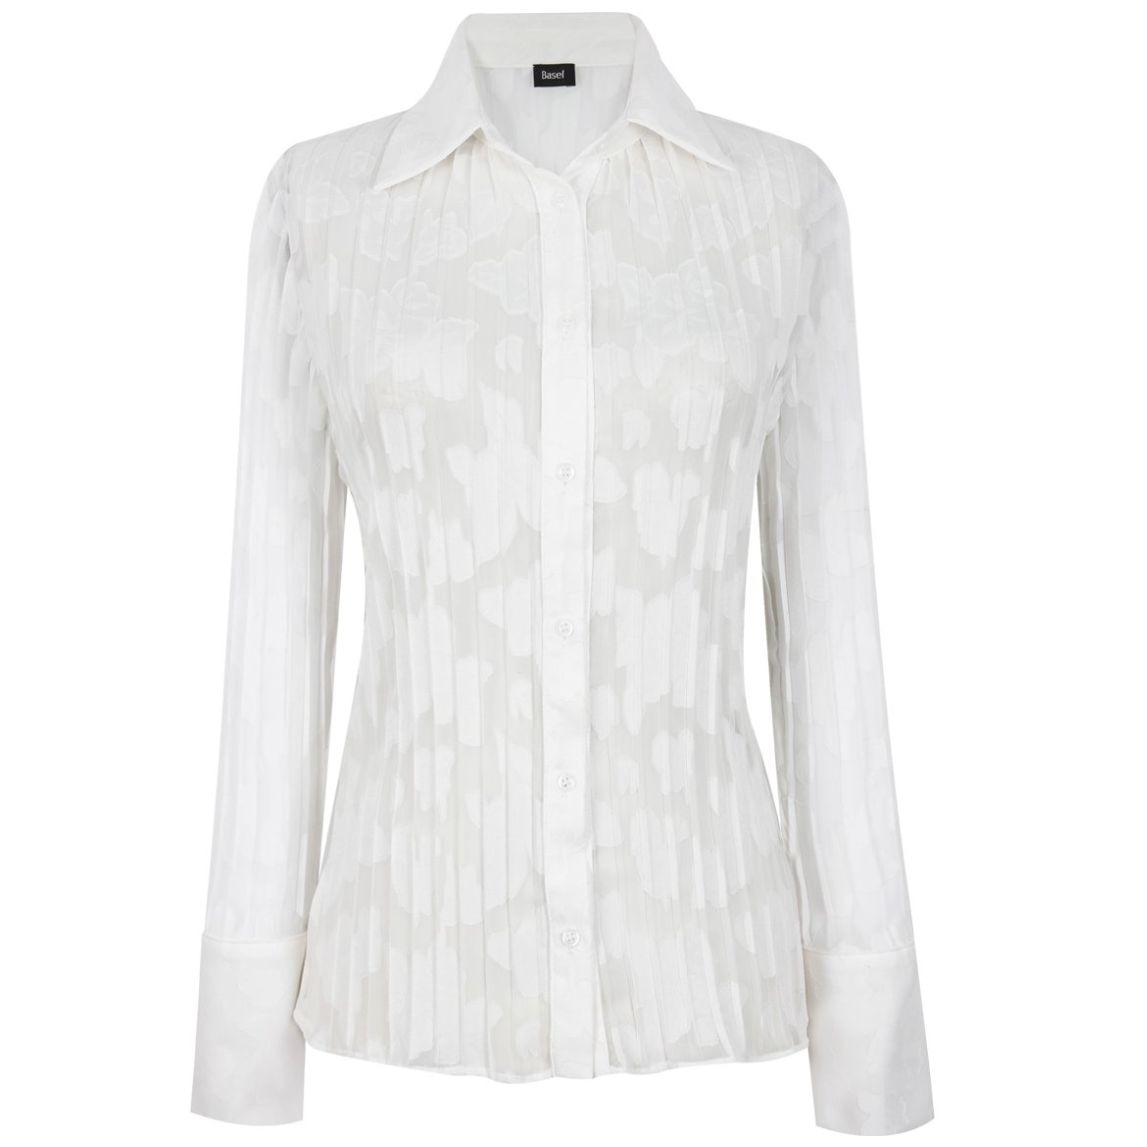 Las mejores ofertas en Louis Vuitton Blusas para mujeres